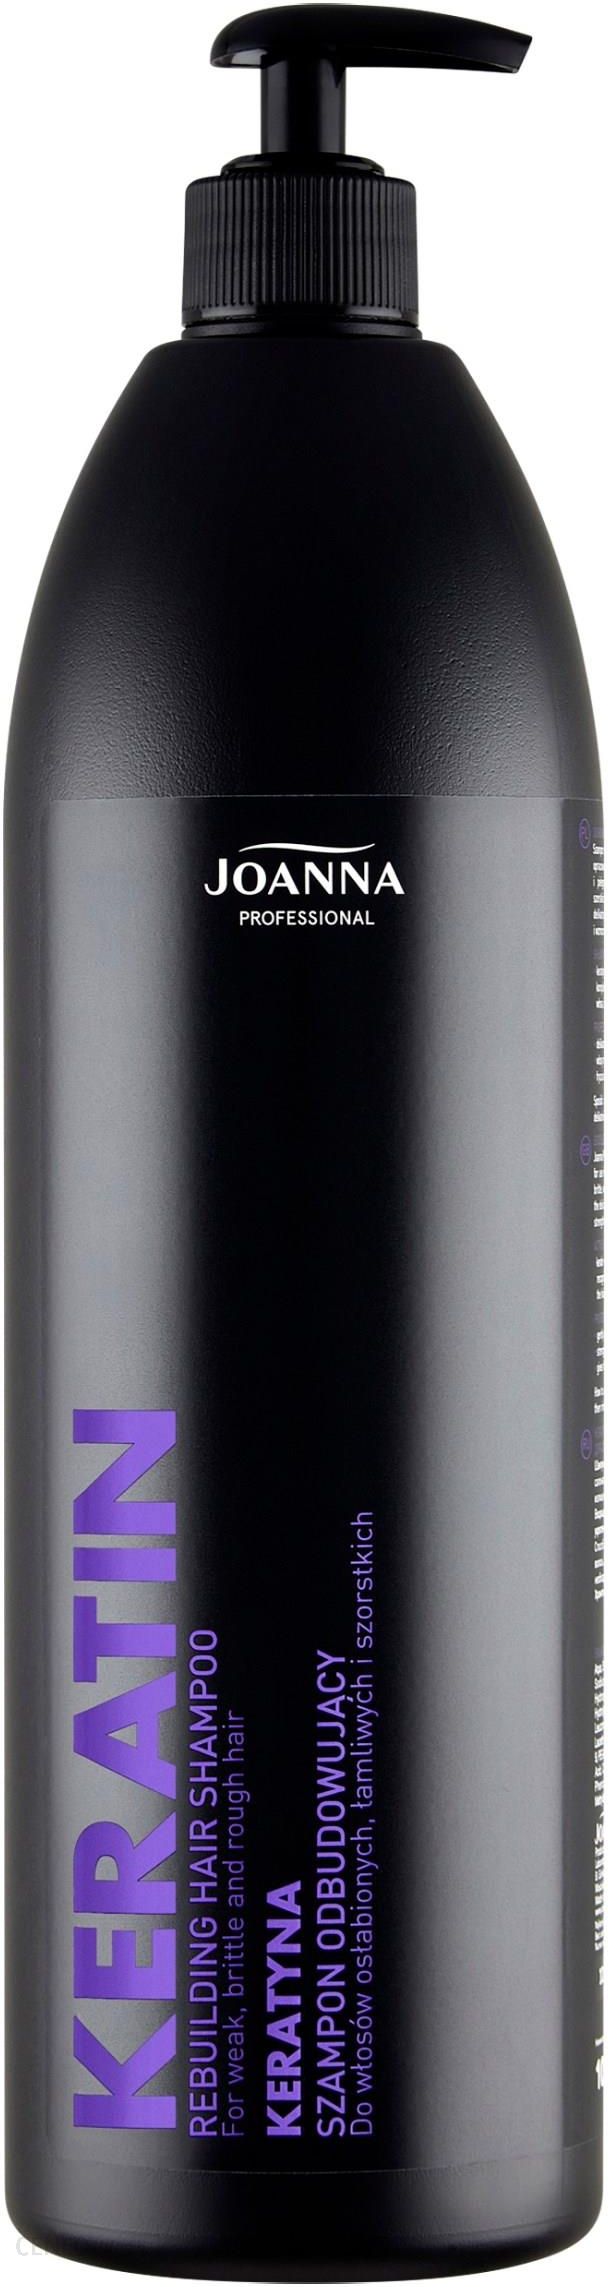 szampon hipoalergiczny joanna